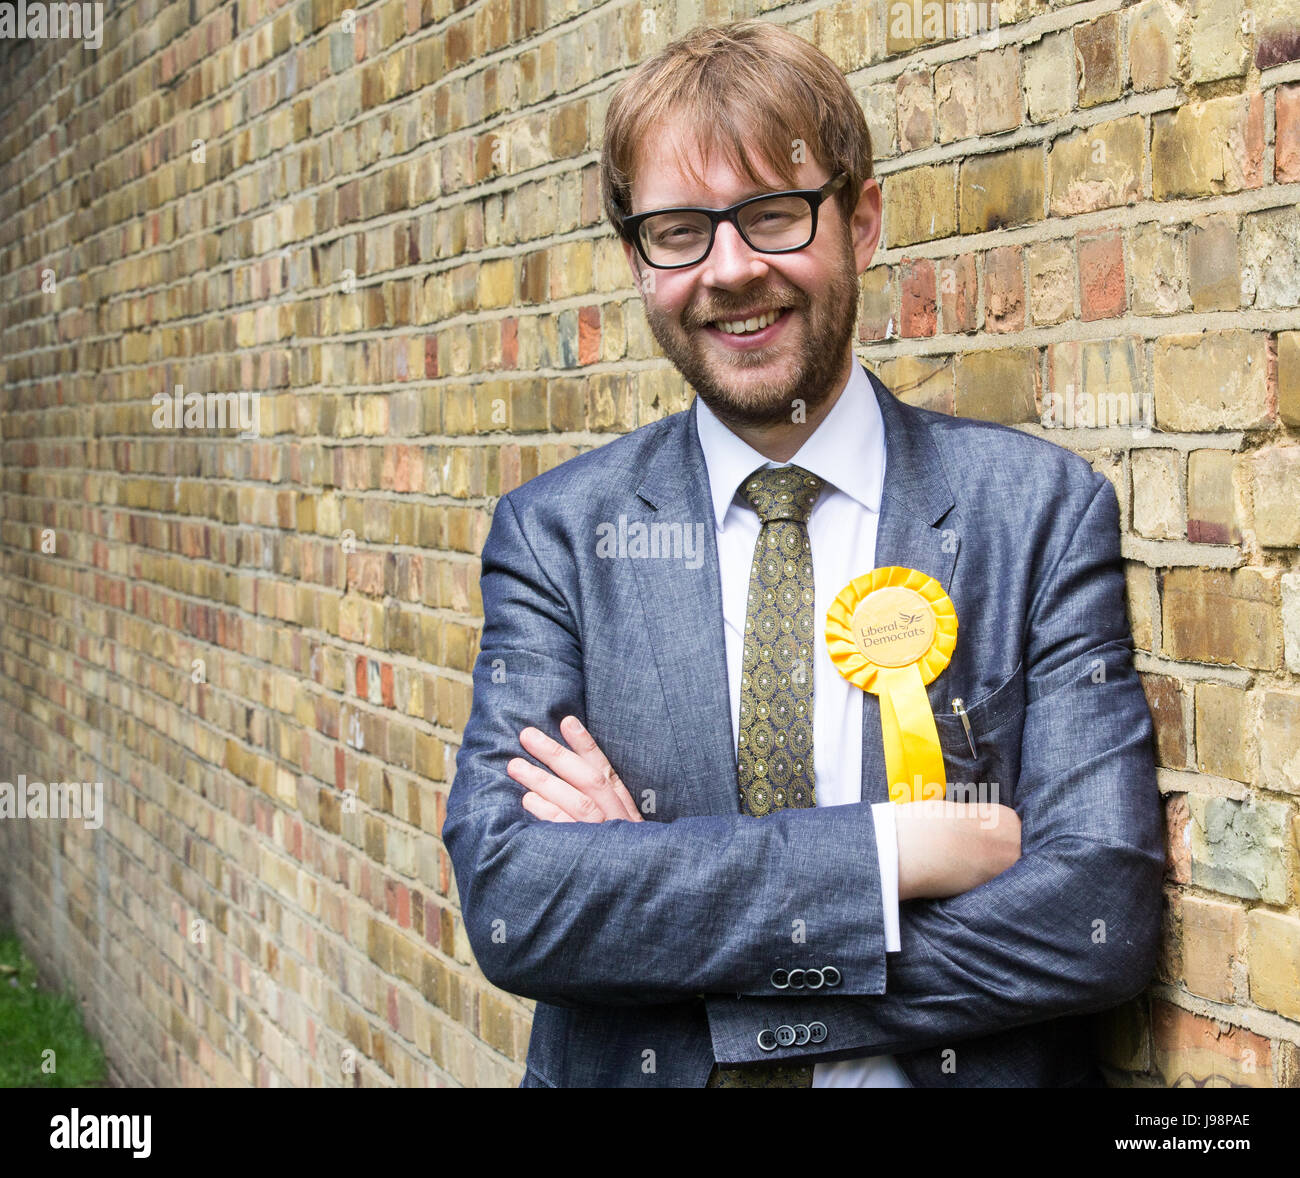 George Turner, ist der liberale Demokrat-Kandidat für Lambeth bei den allgemeinen Wahlen am 8. Juni. Sein Hauptrivale ist der Labour-Kandidat Kate Hoey Stockfoto